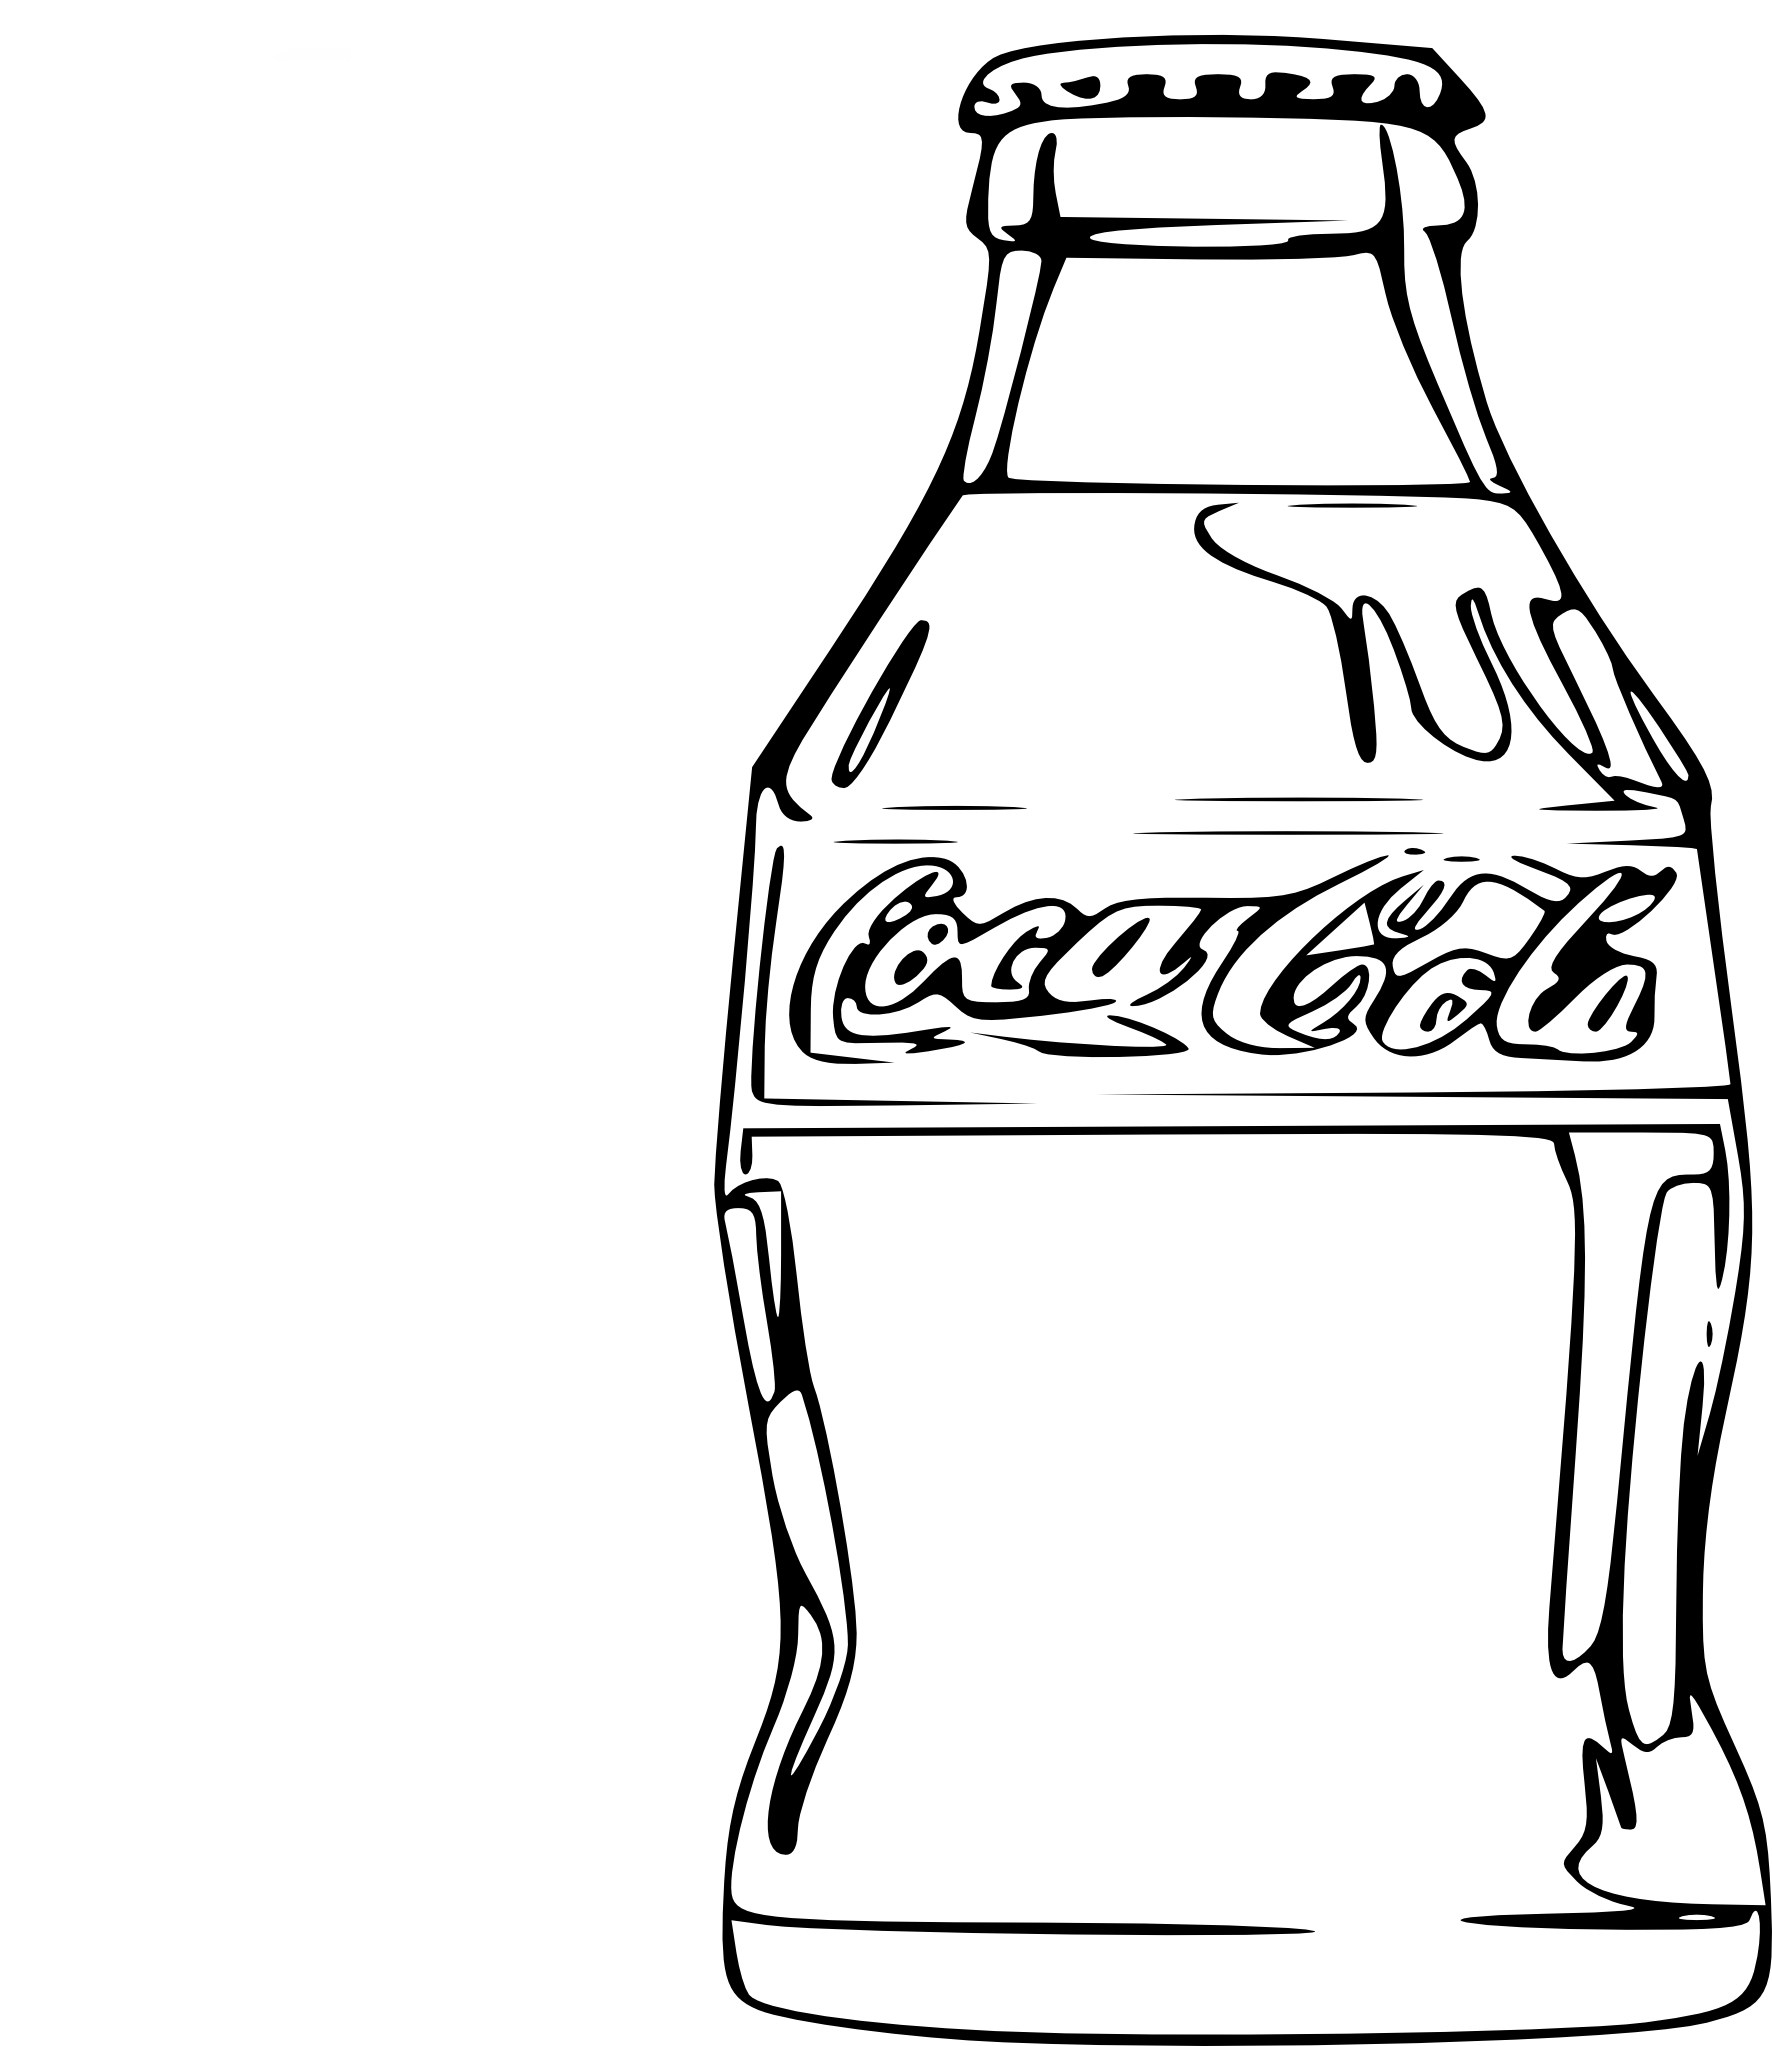 Coca-Cola сняла баннер, закрывавший граффити художника. Потребители Ташкента довольны